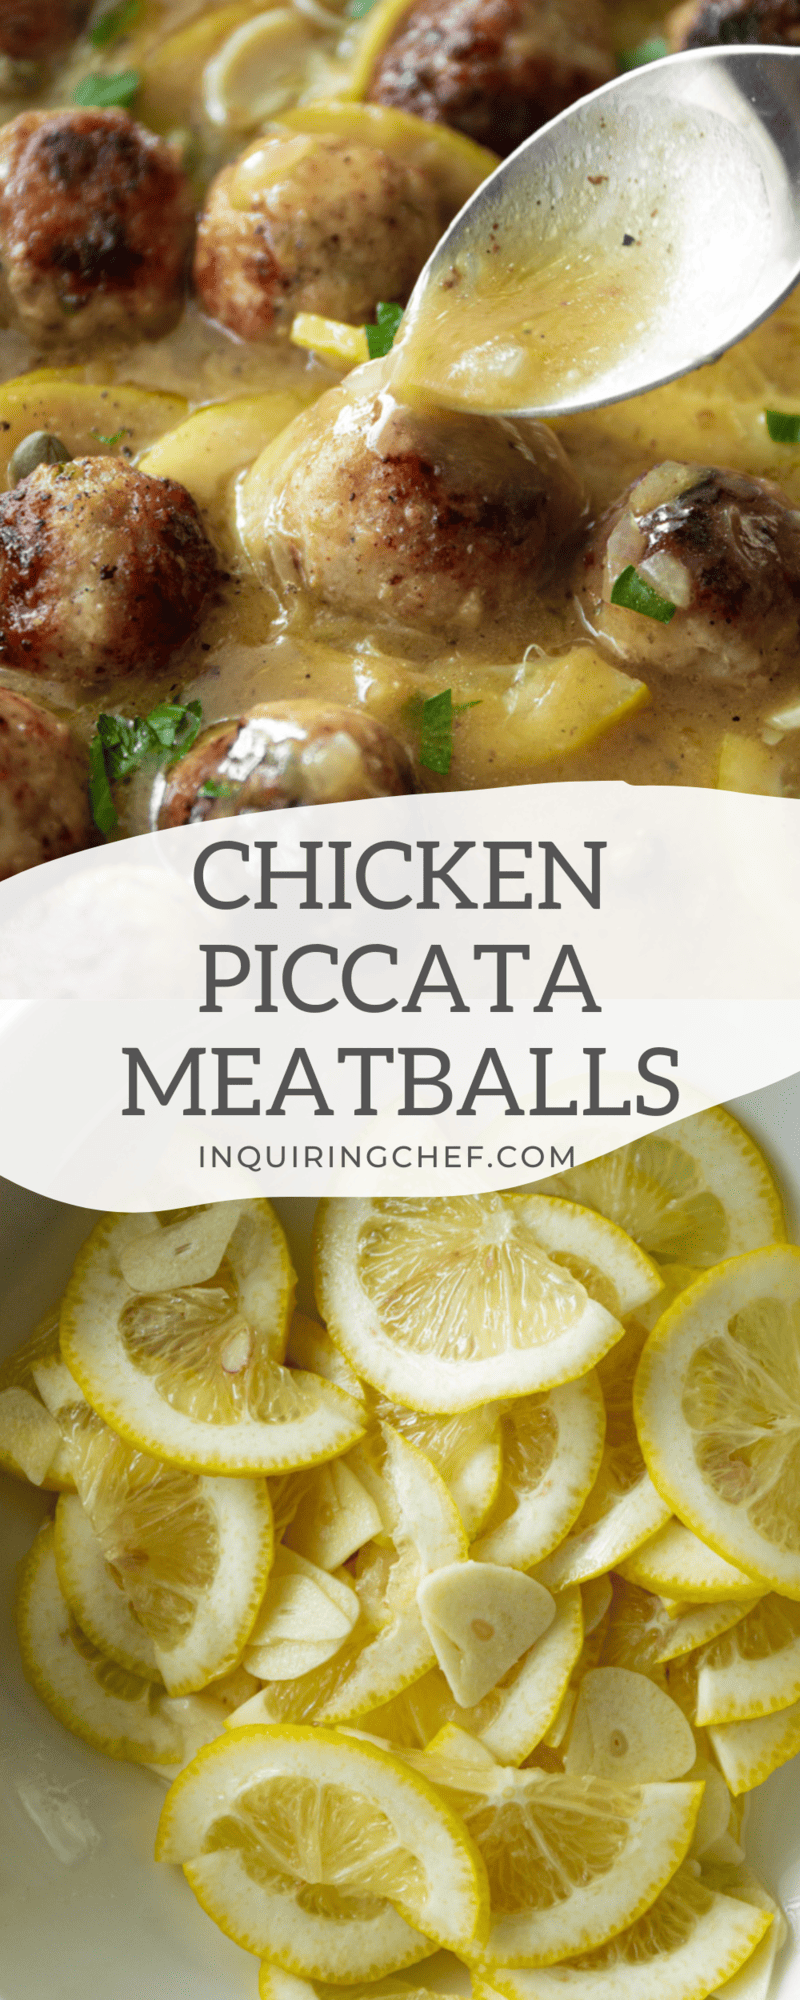 chicken piccata meatballs